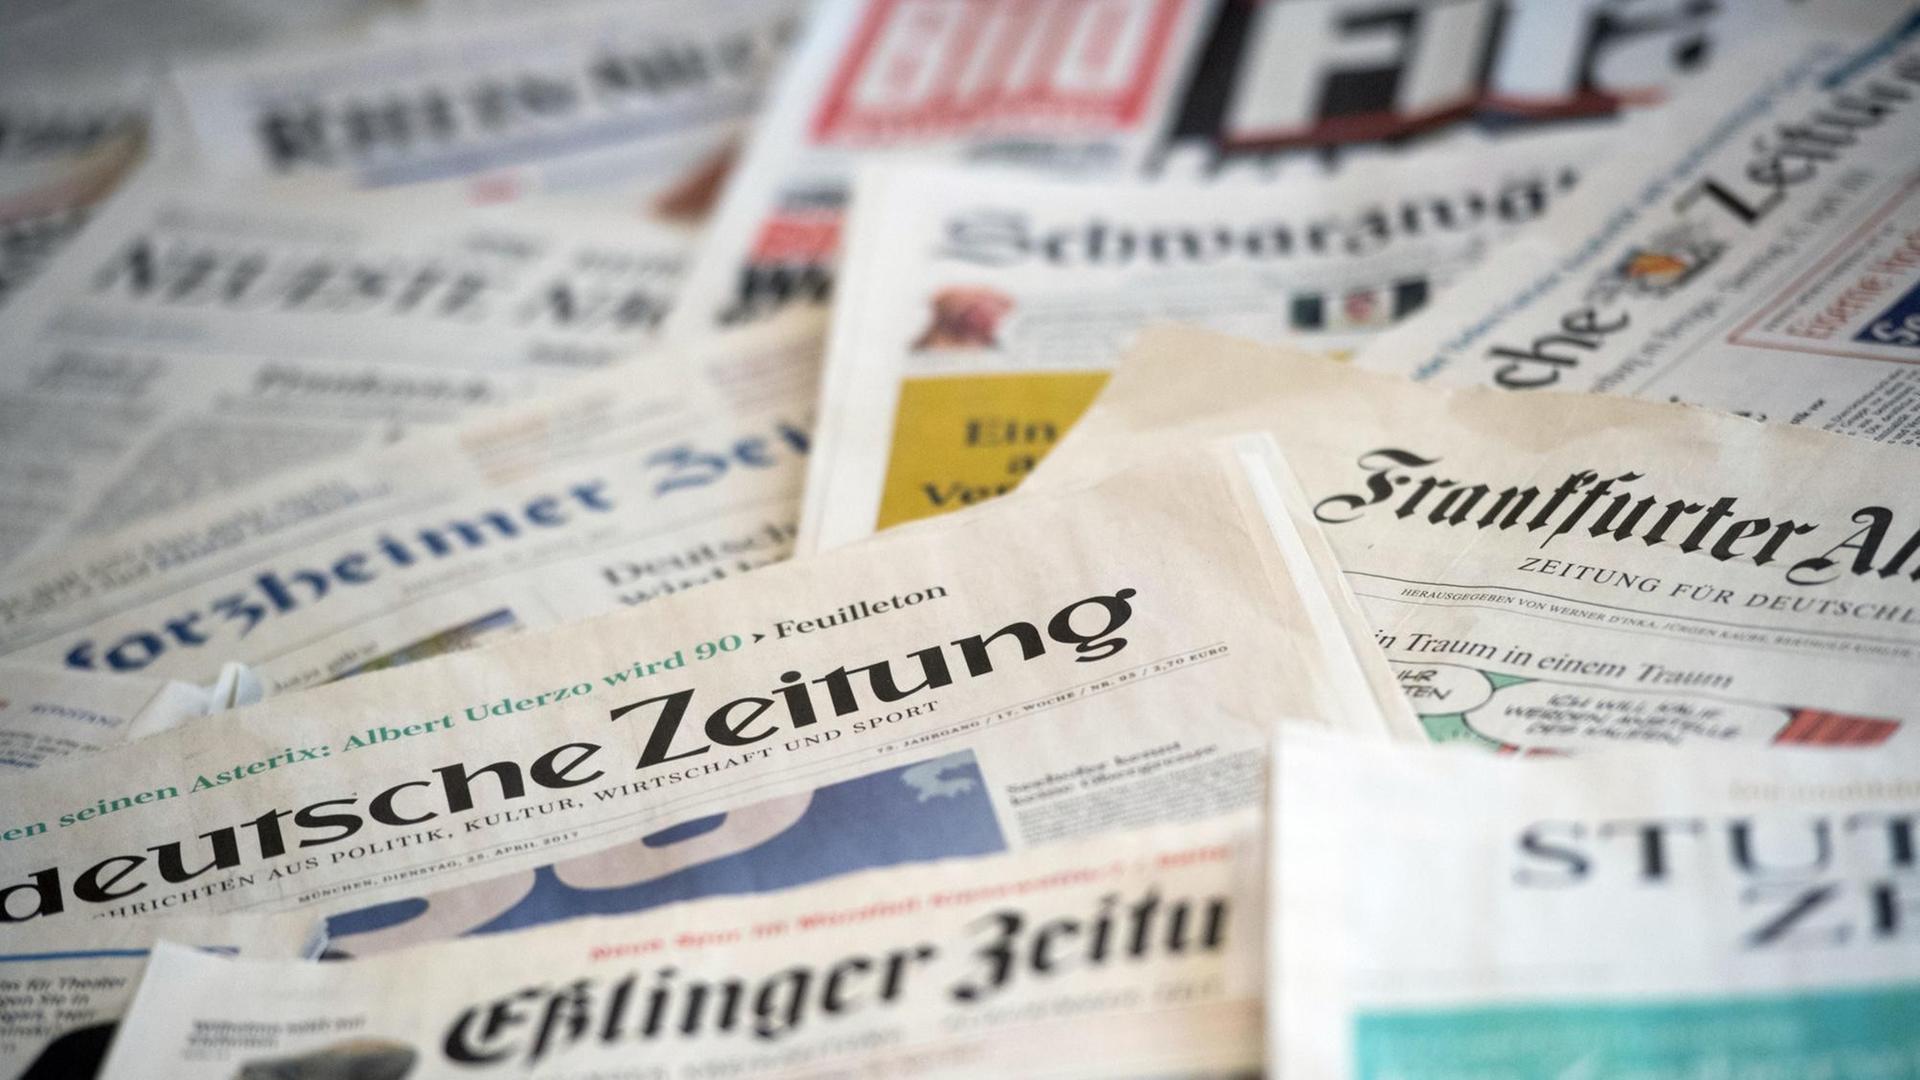 Mehrere Tageszeitungen liegen verstreut auf einem Tisch. Zu sehen sind u.a. die Eßlinger Zeitung, die Süddeutsche Zeitung und die Frankfurter Allgemeine Zeitung.